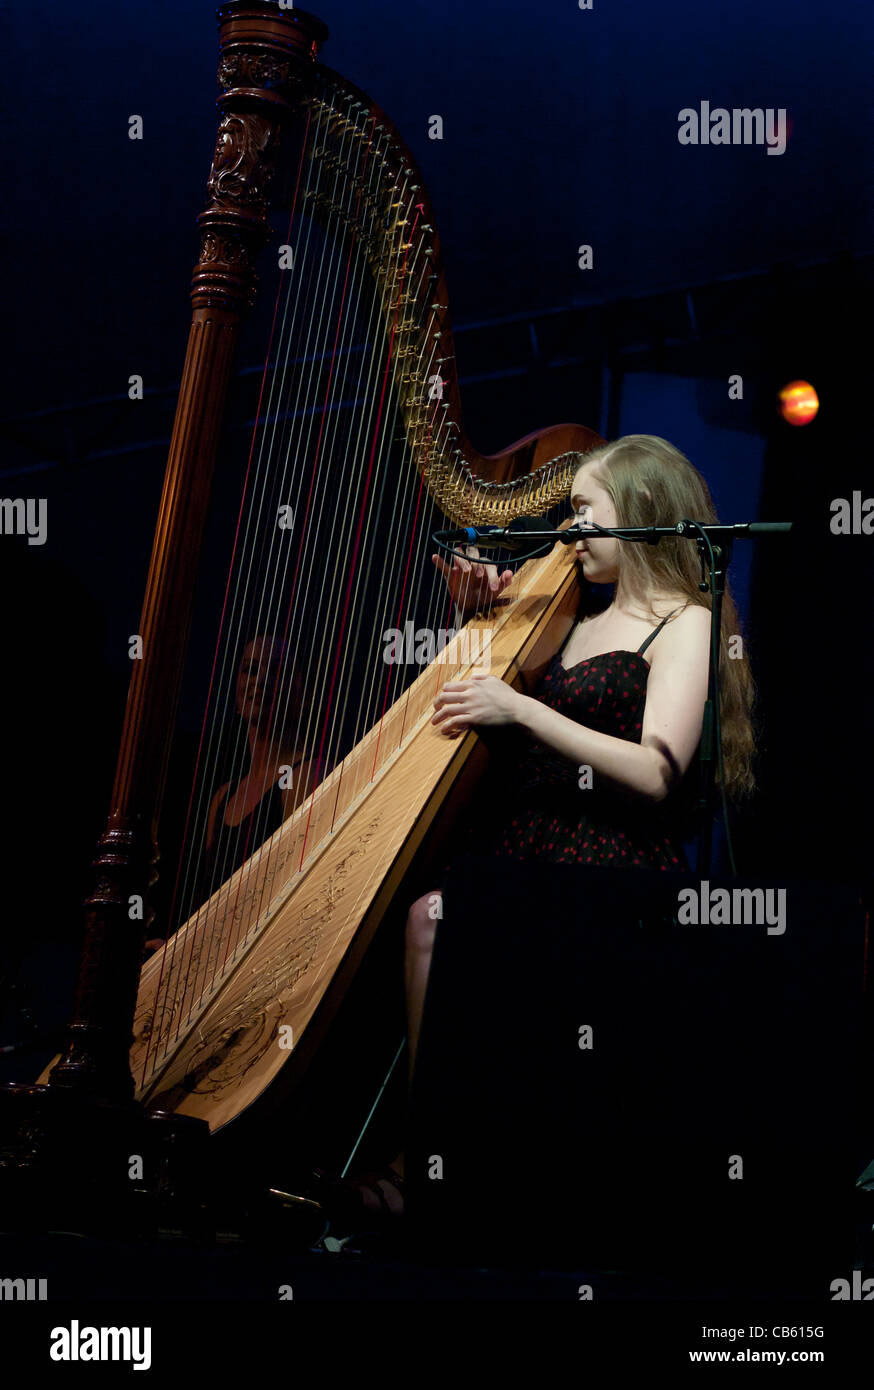 Joanna Newsom effectuant de la harpe au festival de musique 2011 womadelaide Adelaide Australie Banque D'Images